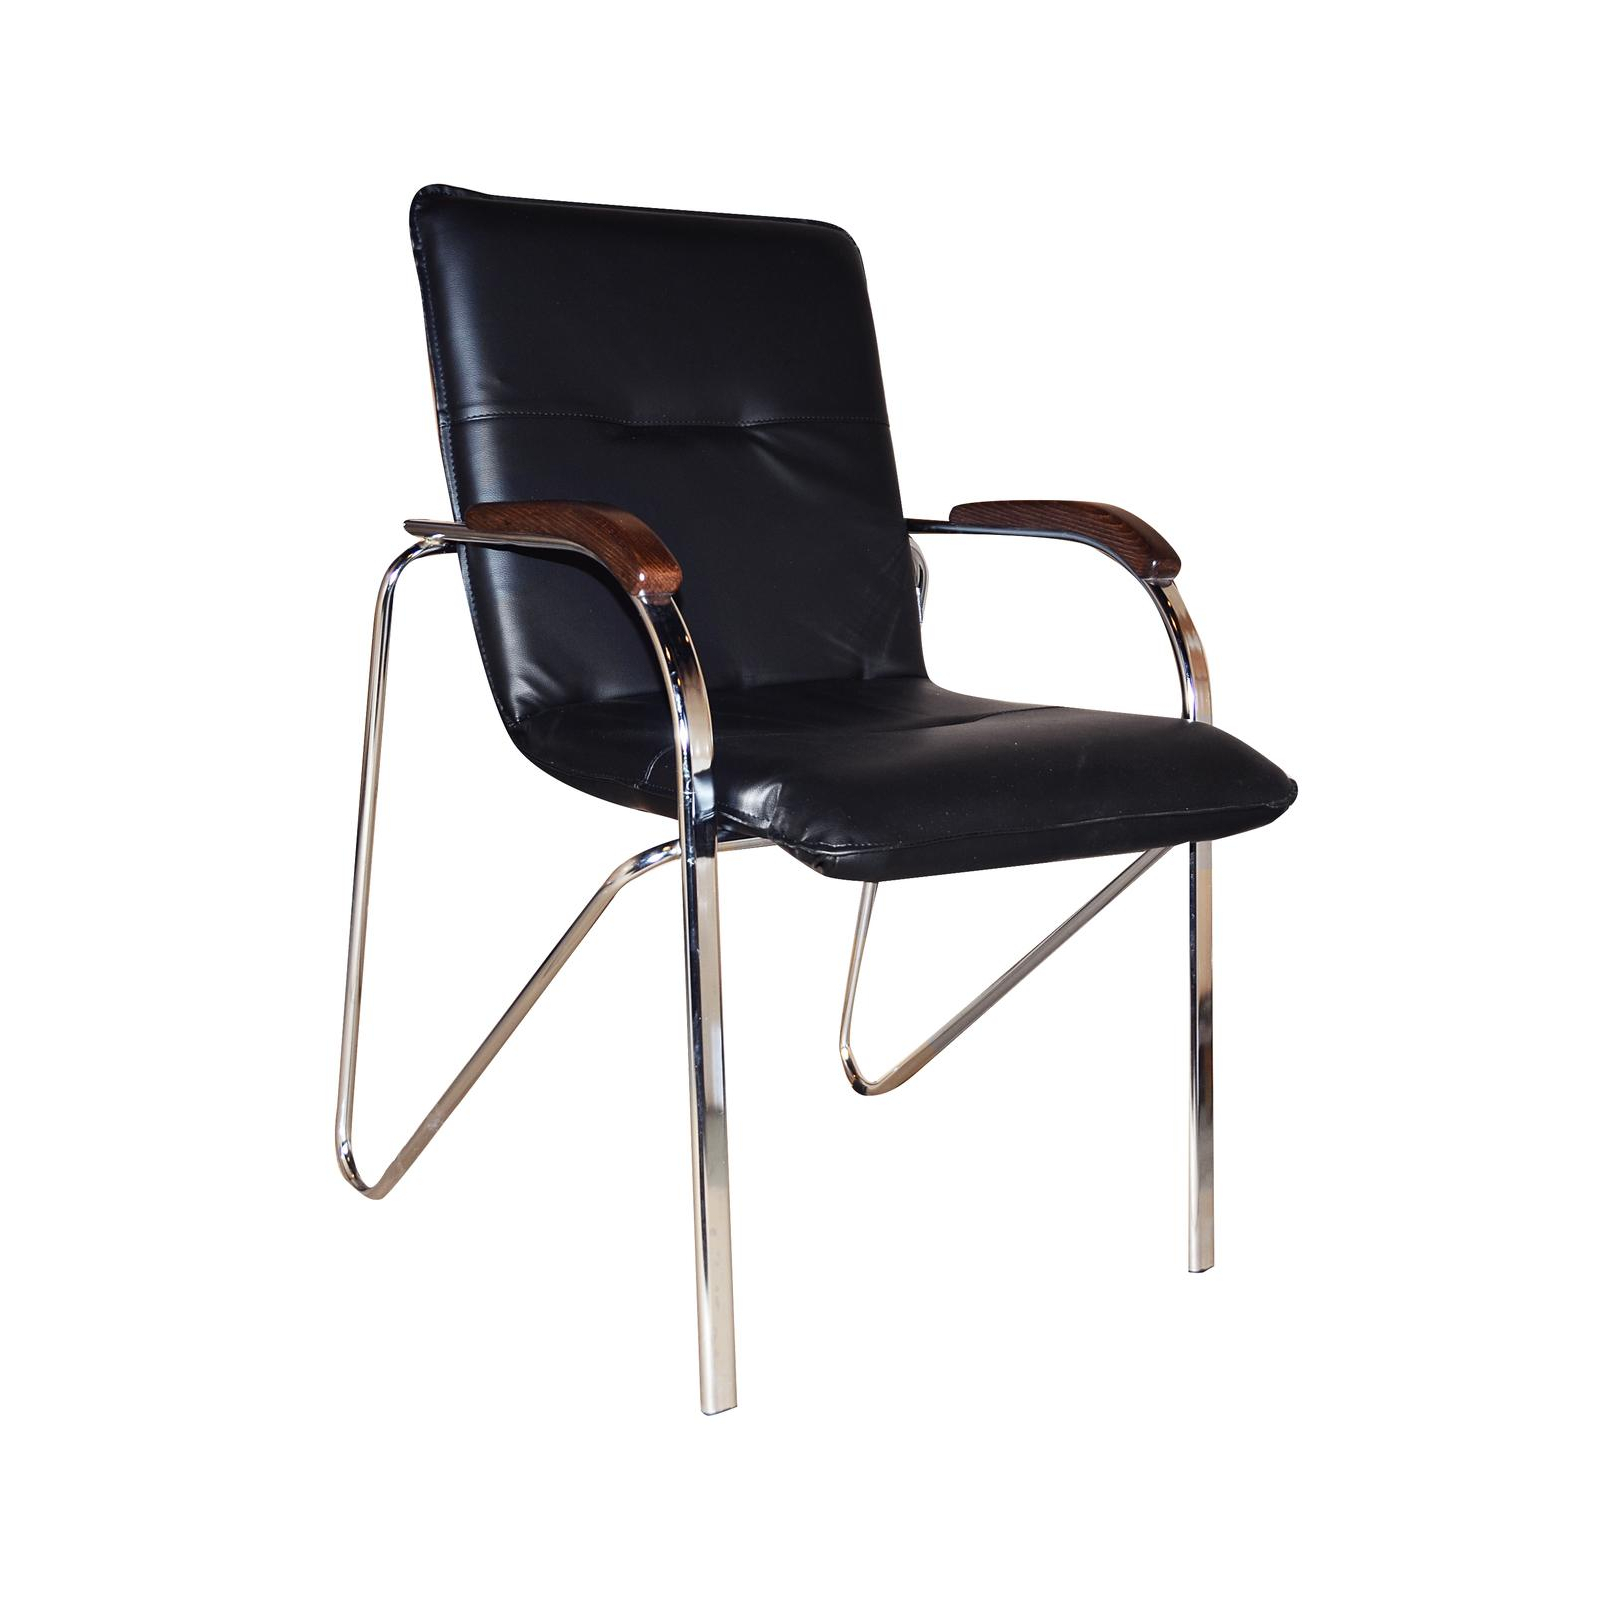 Офісний стілець Примтекс плюс Samba chrome wood 1.031 CZ-3 Black (Samba chrome wood 1.031 CZ-3)